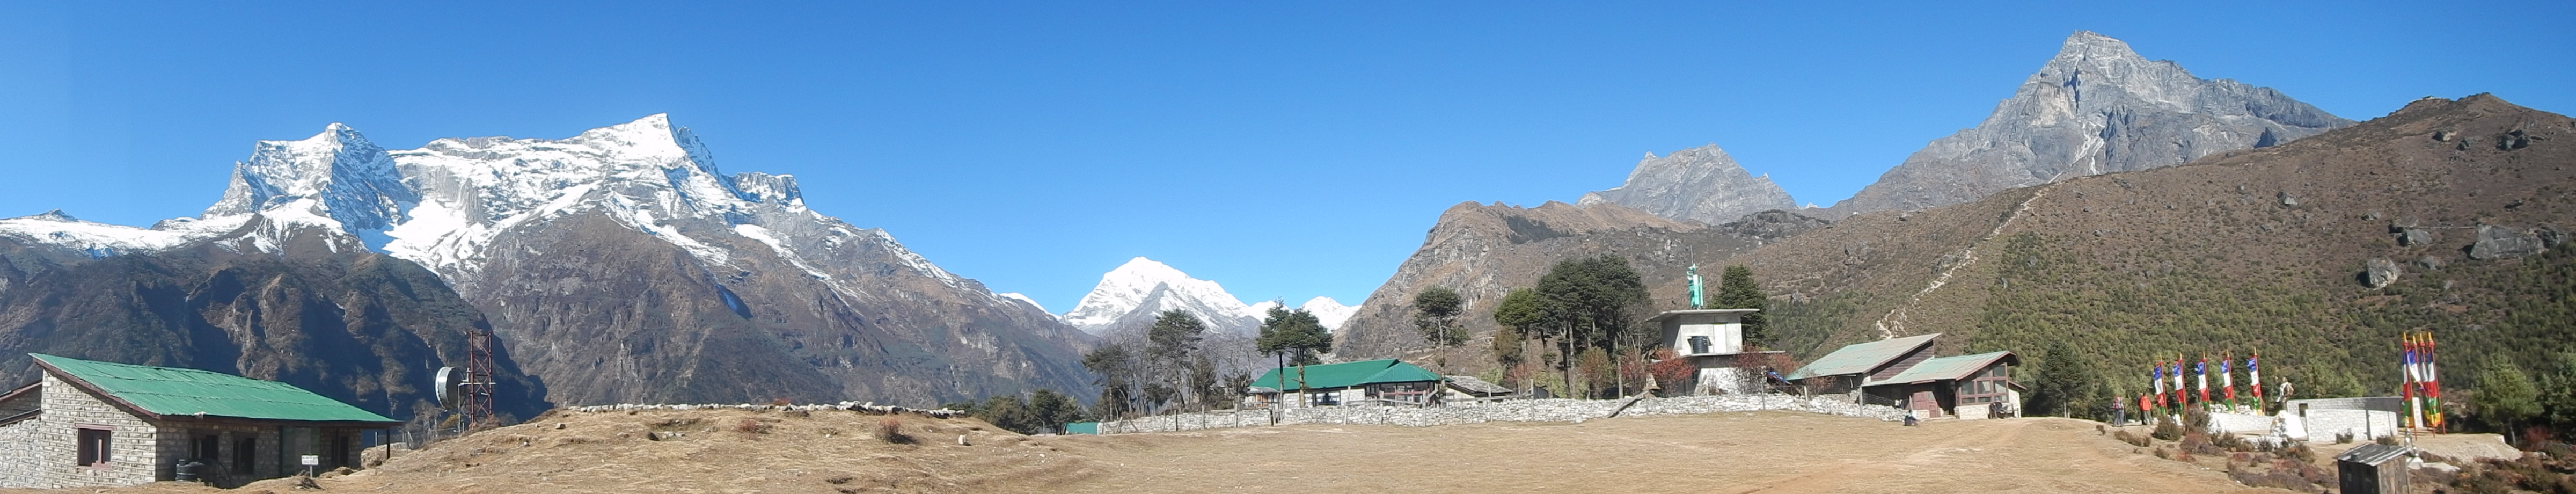 paysage du népal